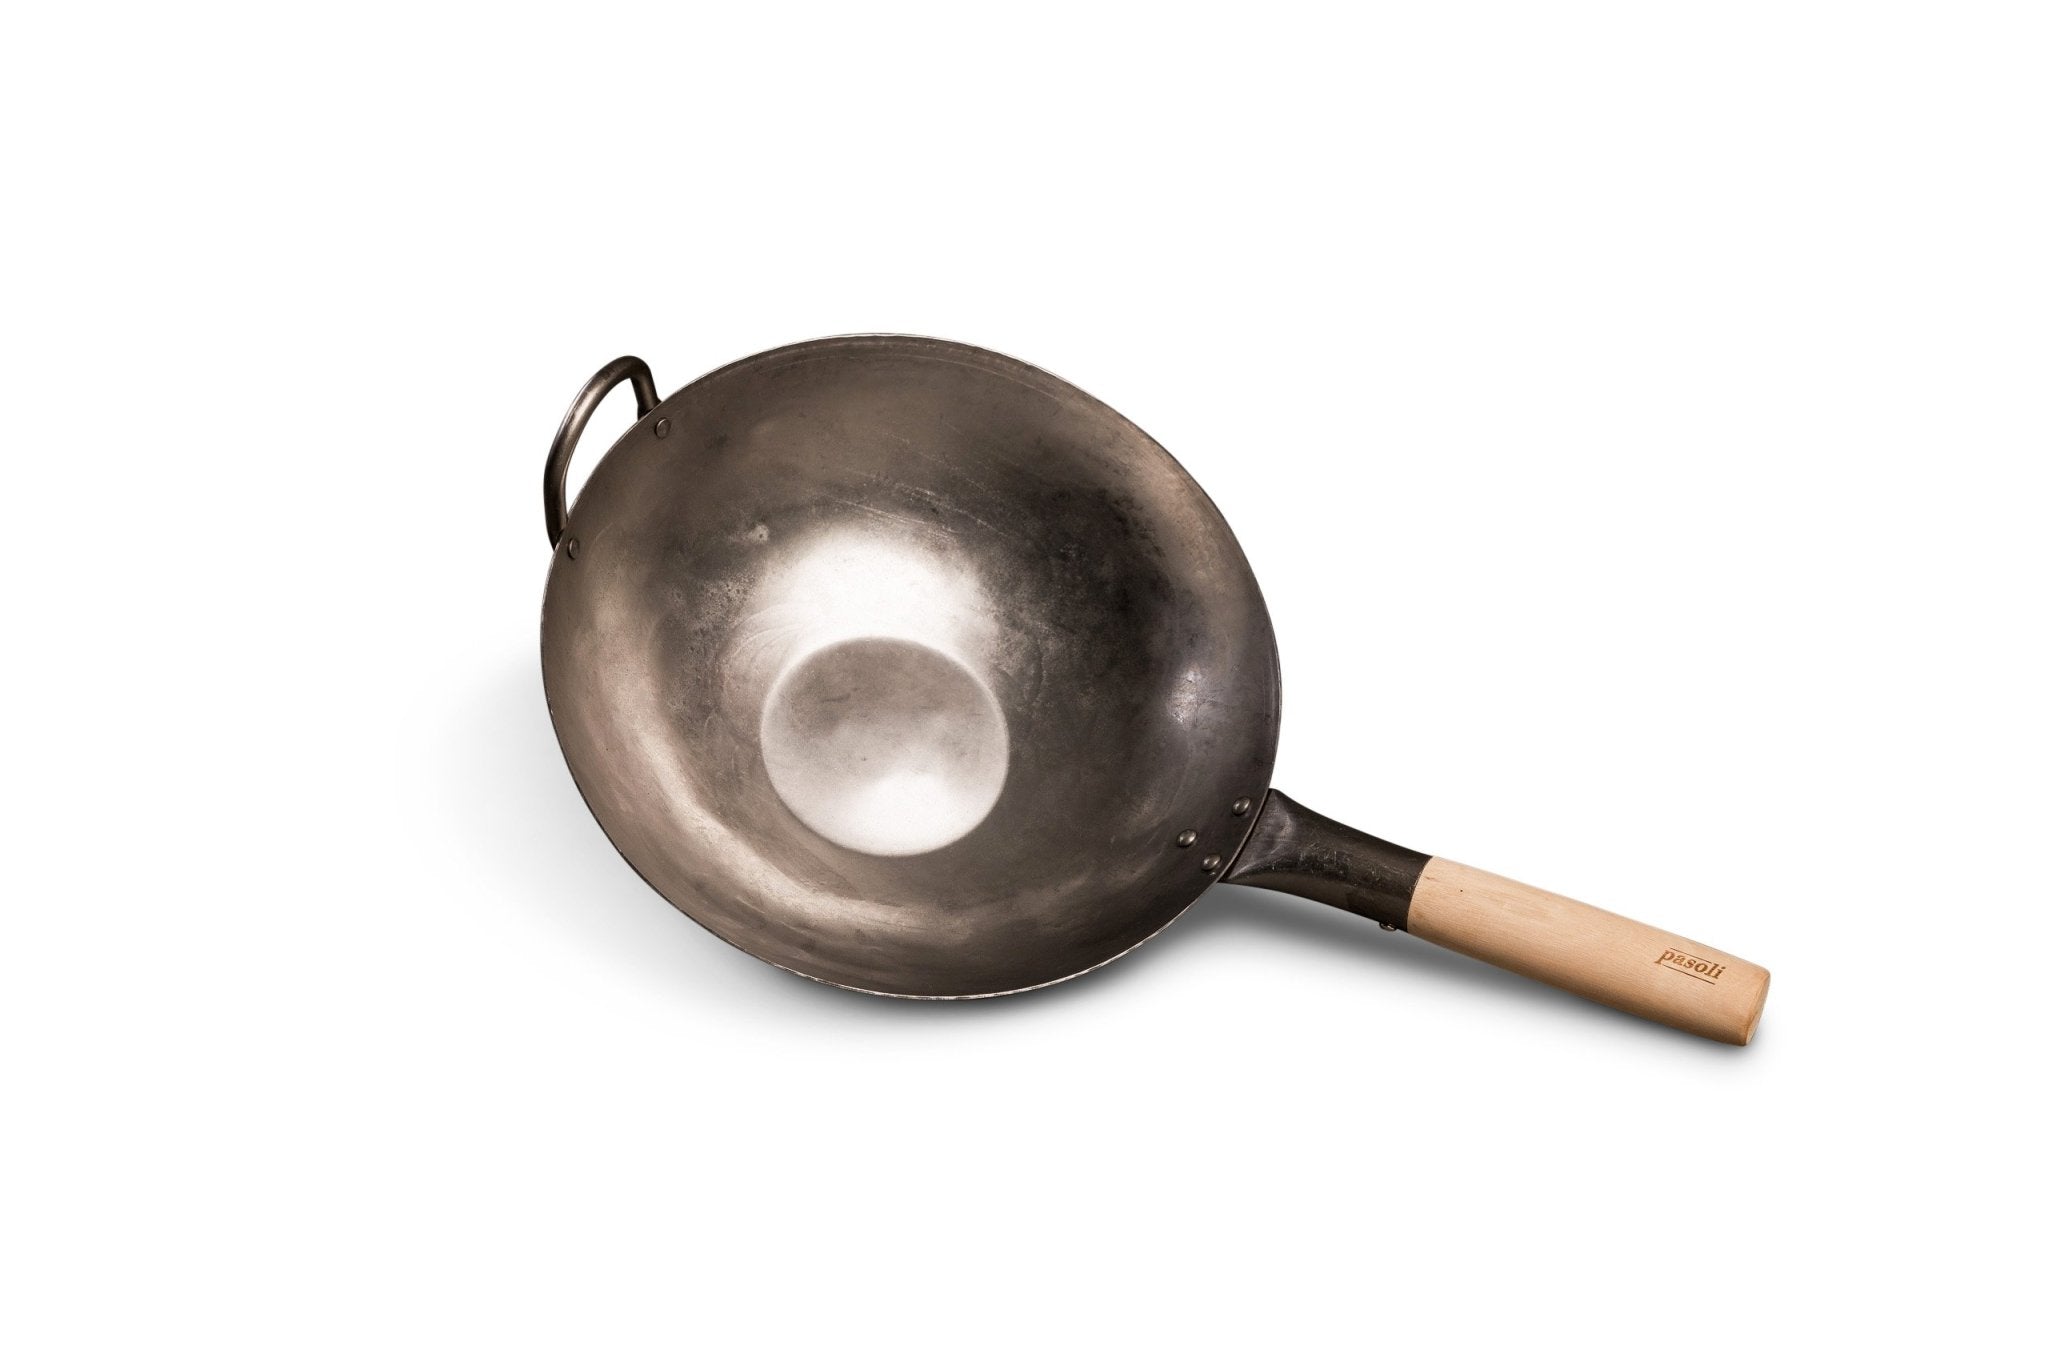 Poêle wok traditionnelle en fer forgé à la main